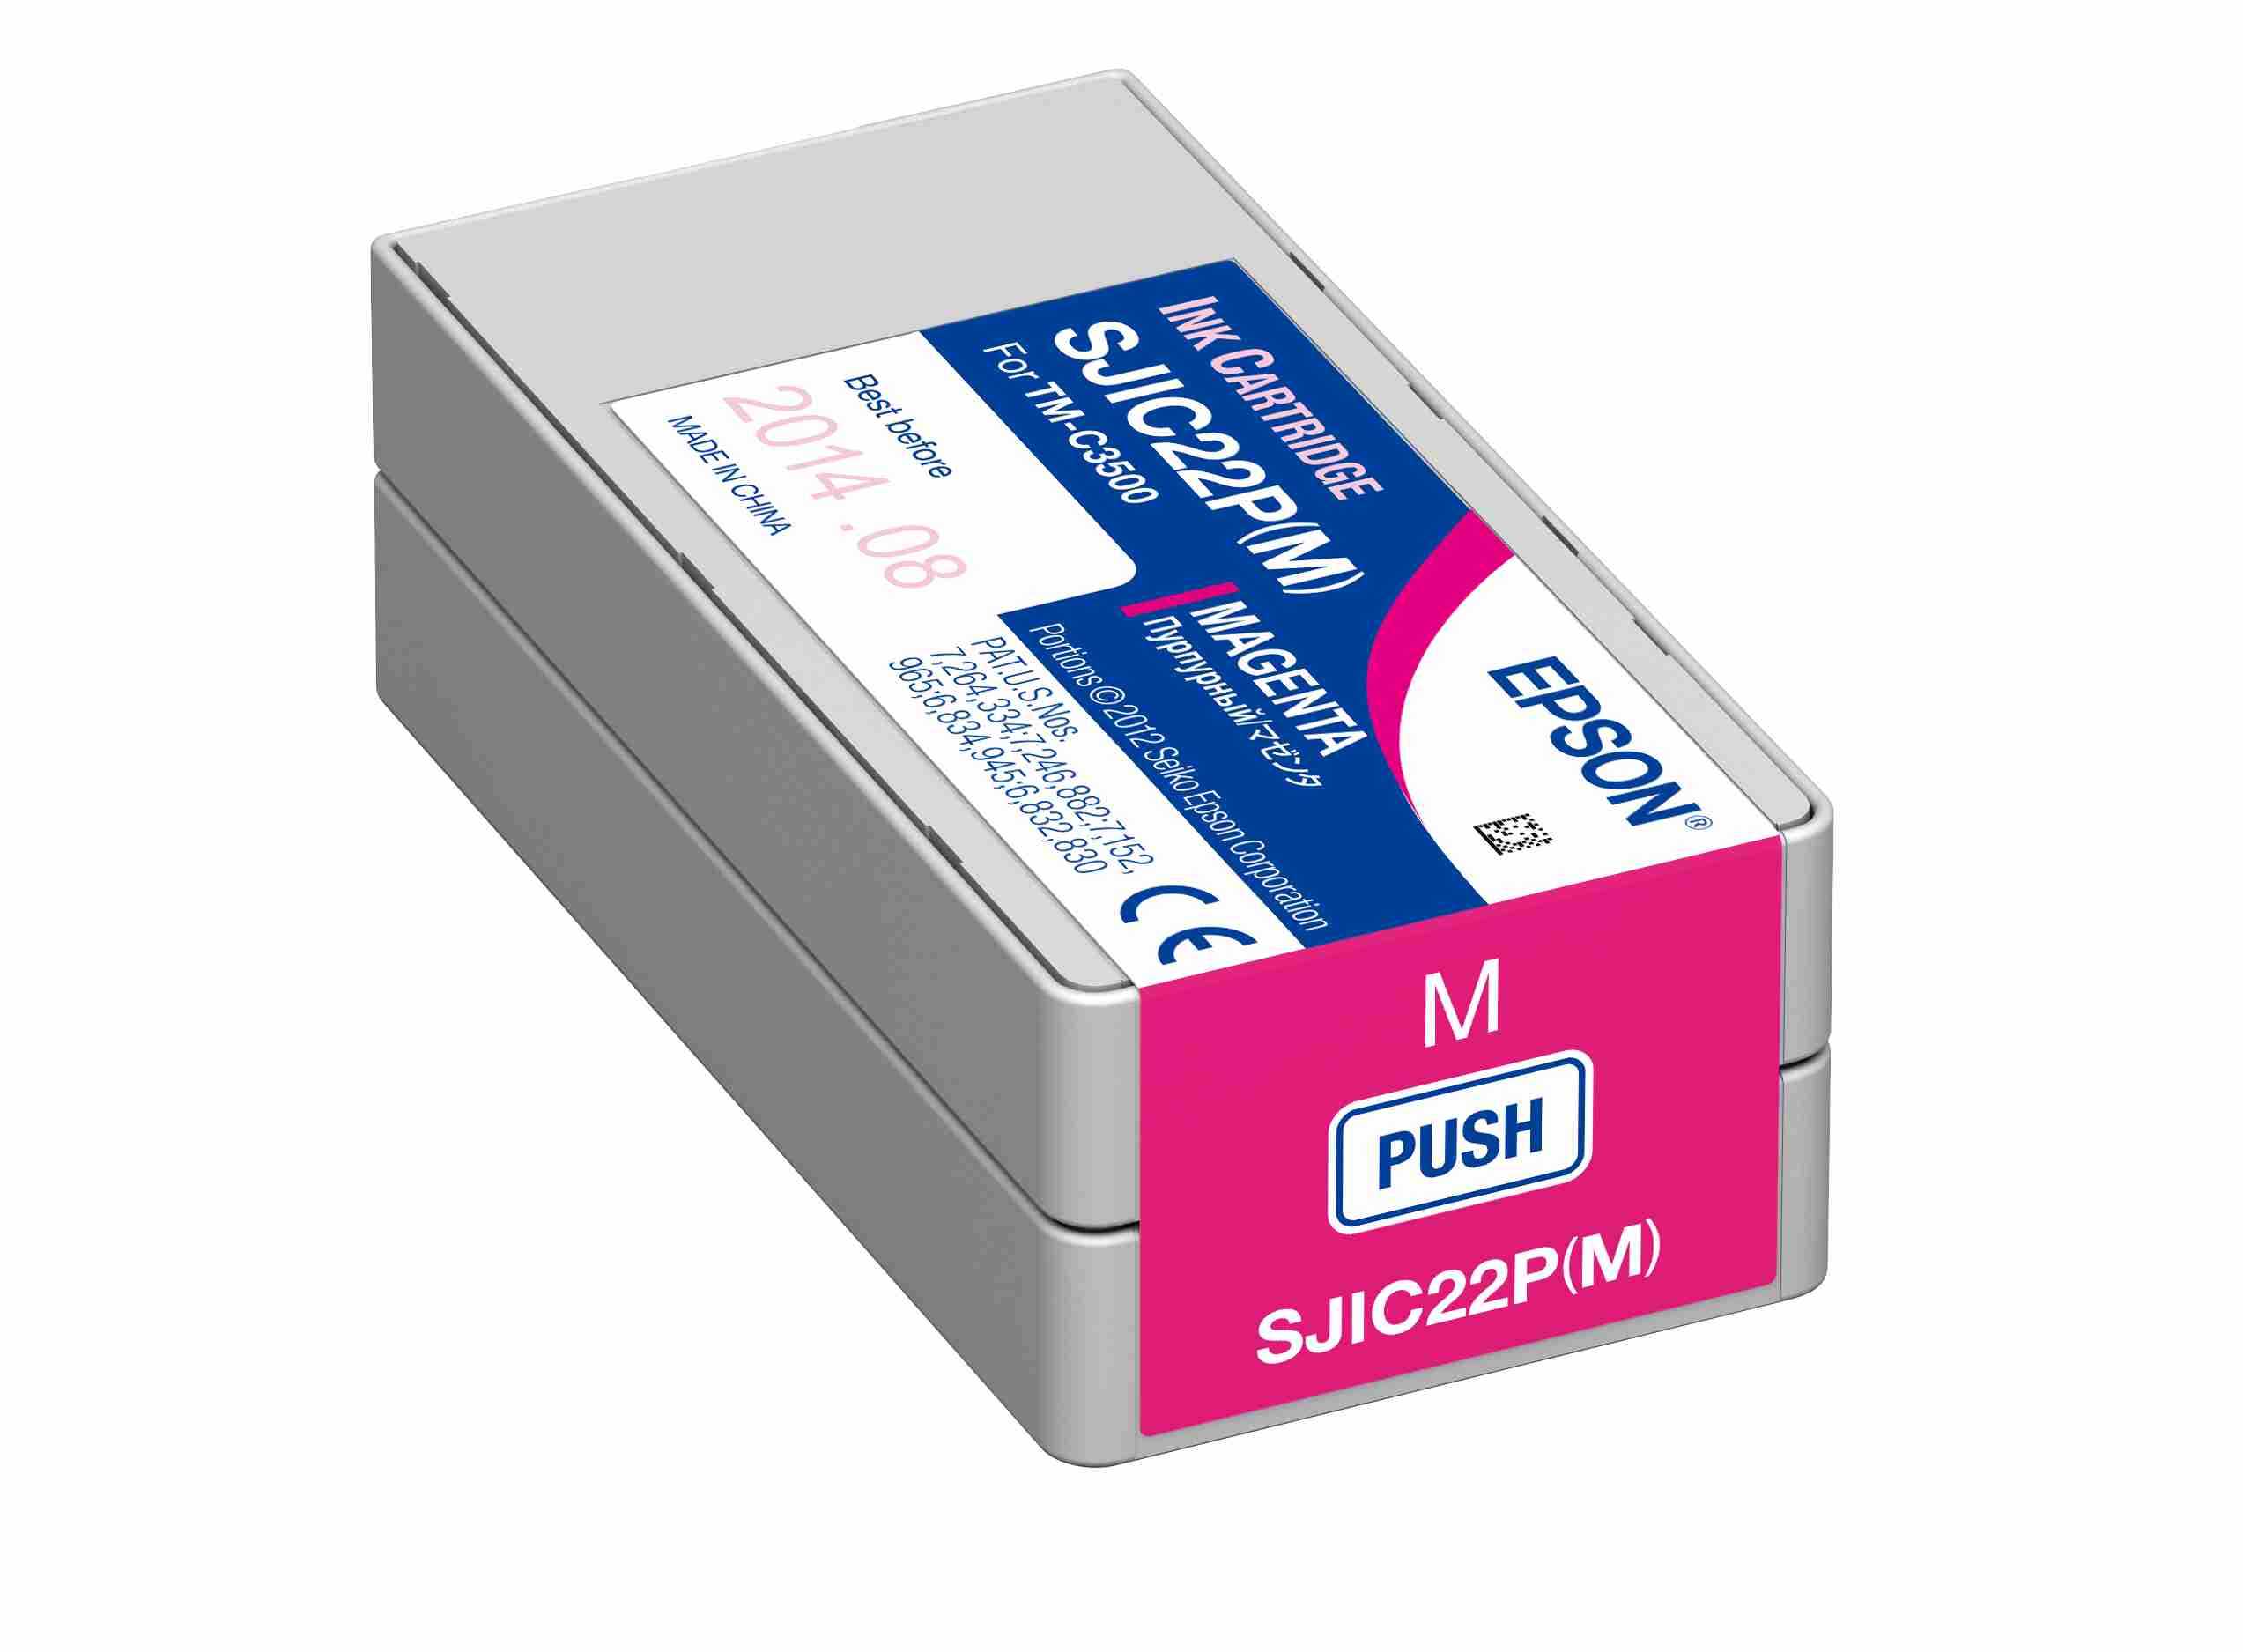 Kartusche Epson SJIC22P(M) magenta für C3500